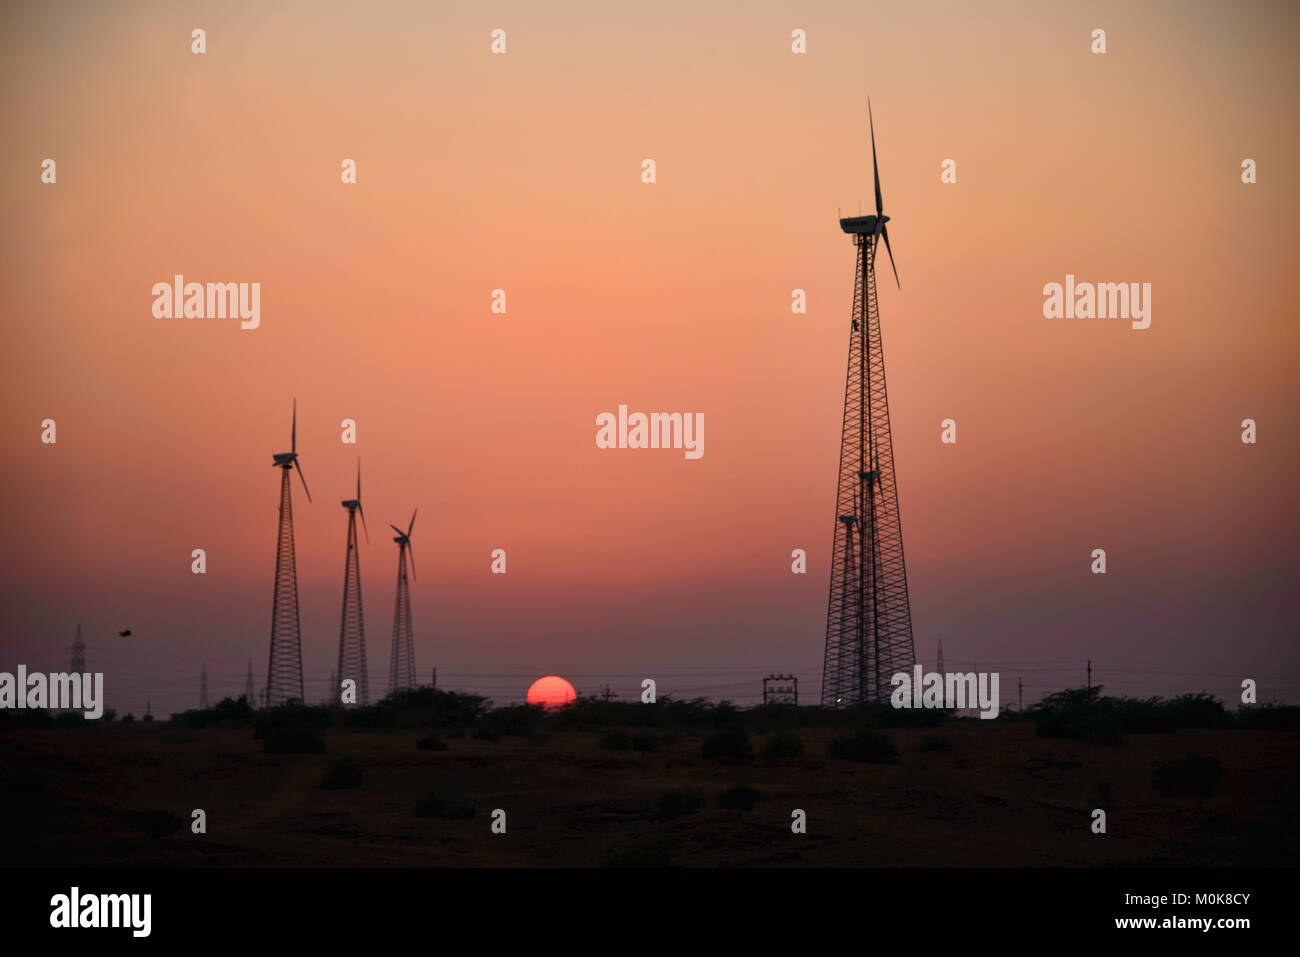 Windmühlen in der Wüste Thar bei Sonnenuntergang, Rajasthan, Indien Stockfoto